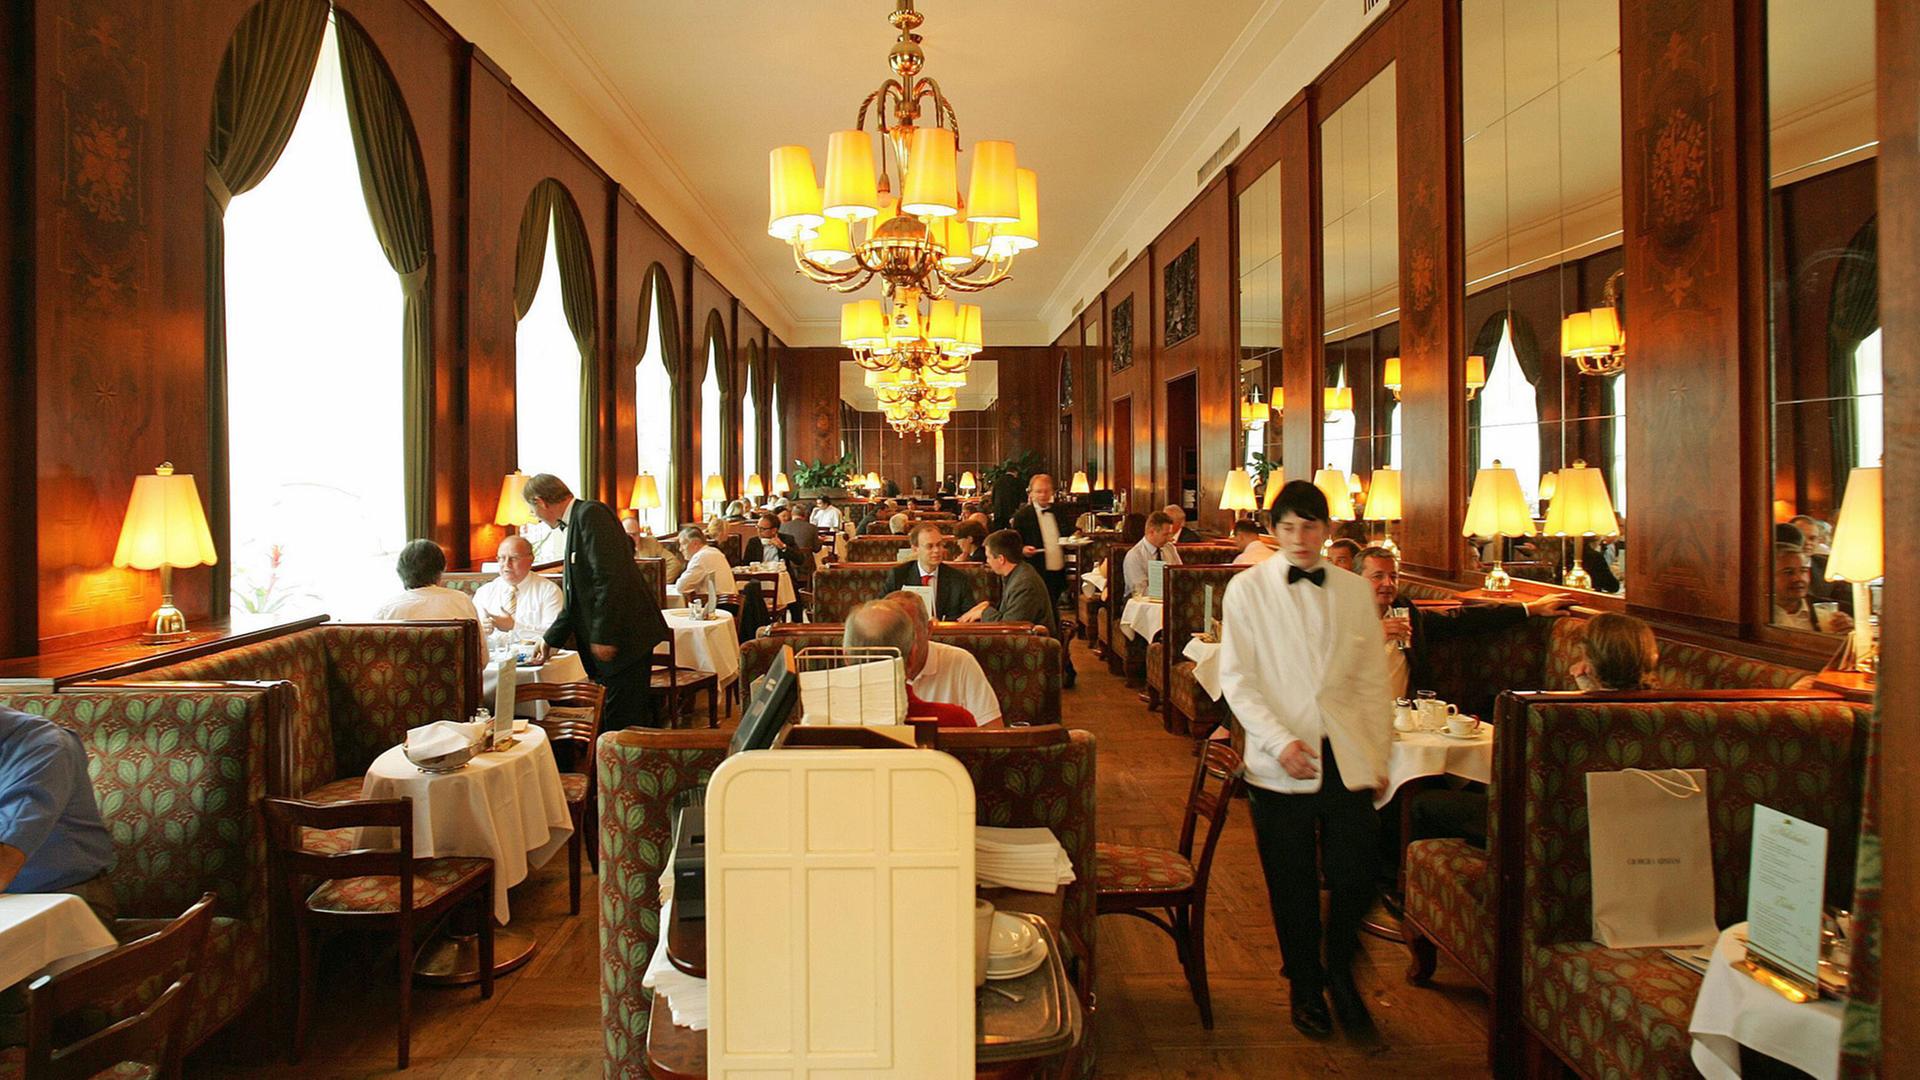 Blich in den Gastraum des Café Landtmann, eines der traditionellen Kaffeehäuser in der österreichischen Hauptstadt Wien